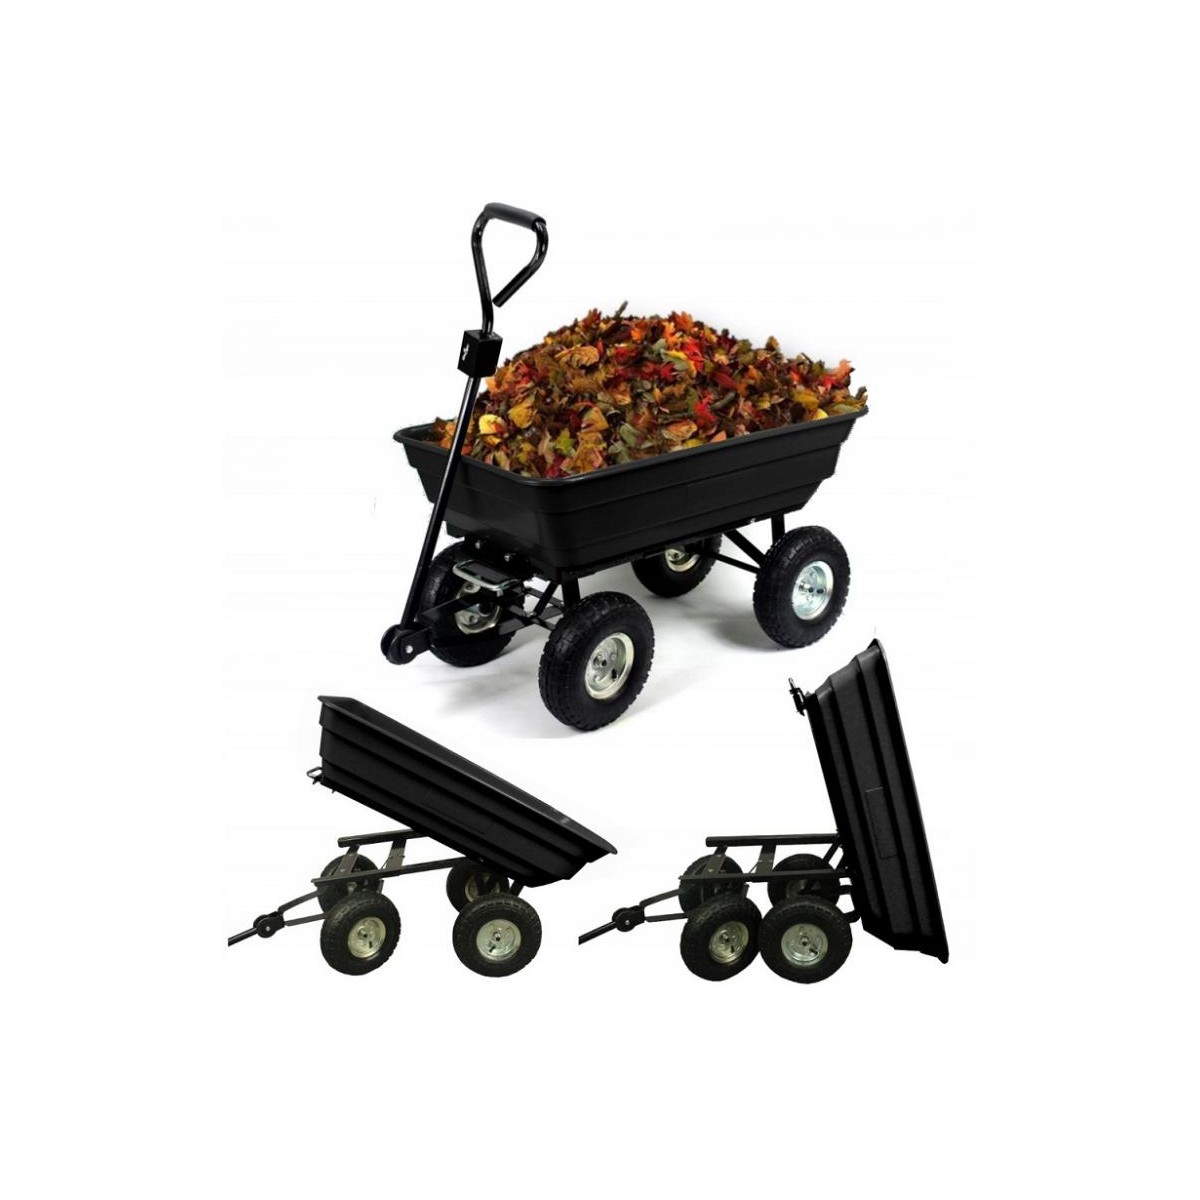 Prepravný záhradný vozík je určený na prepravu ľahkých ale aj ťažkých nákladov do 300 kg. Je vhodný ako pre prácu v záhrade